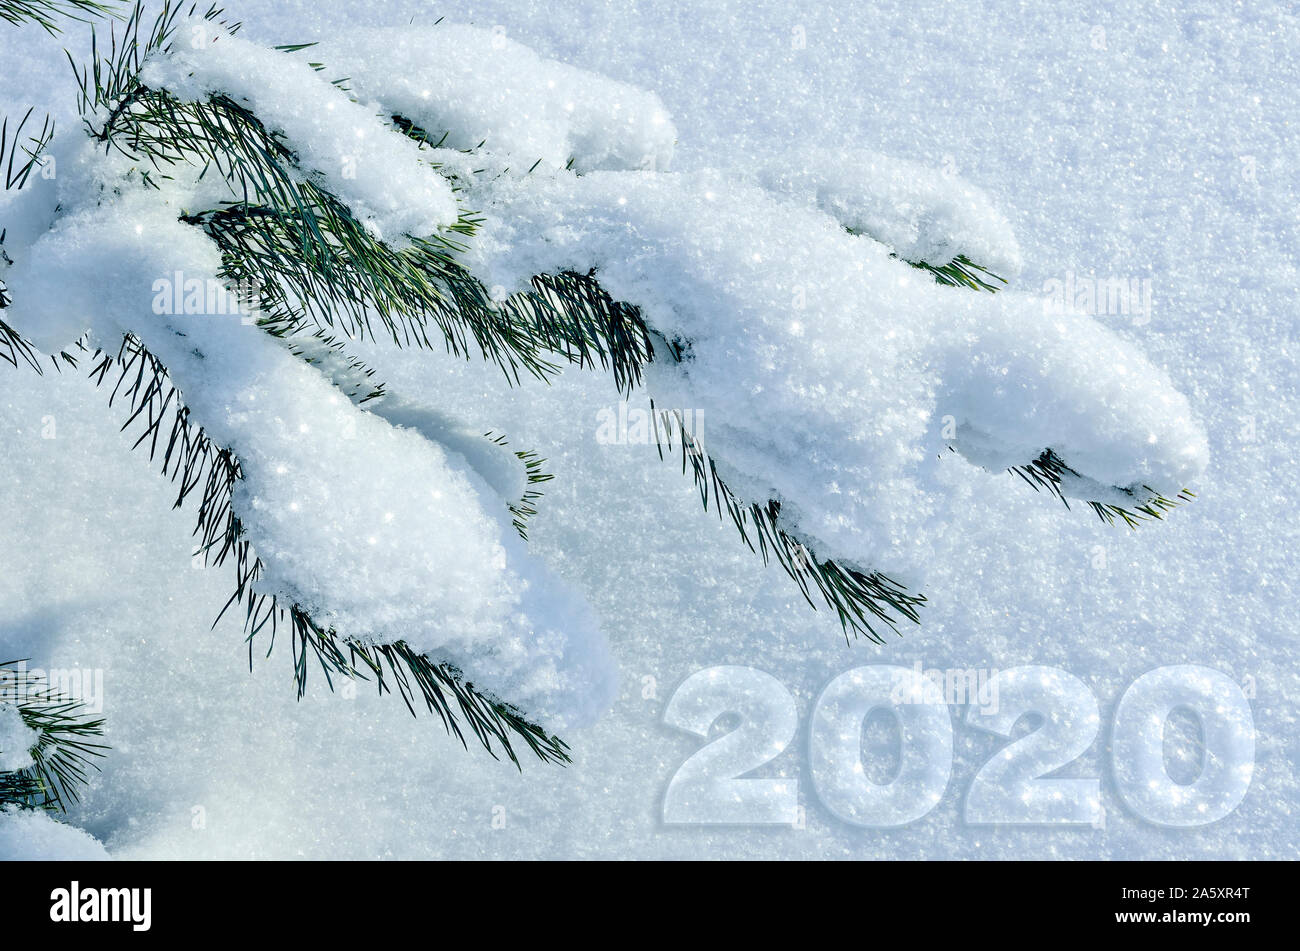 L'hiver, Noël ou Nouvel An carte de souhaits ou de calendrier modèle  couvercle vert avec des branches de sapin recouvert de neige et la date 2020.  Design saisonnier d'hiver Photo Stock -